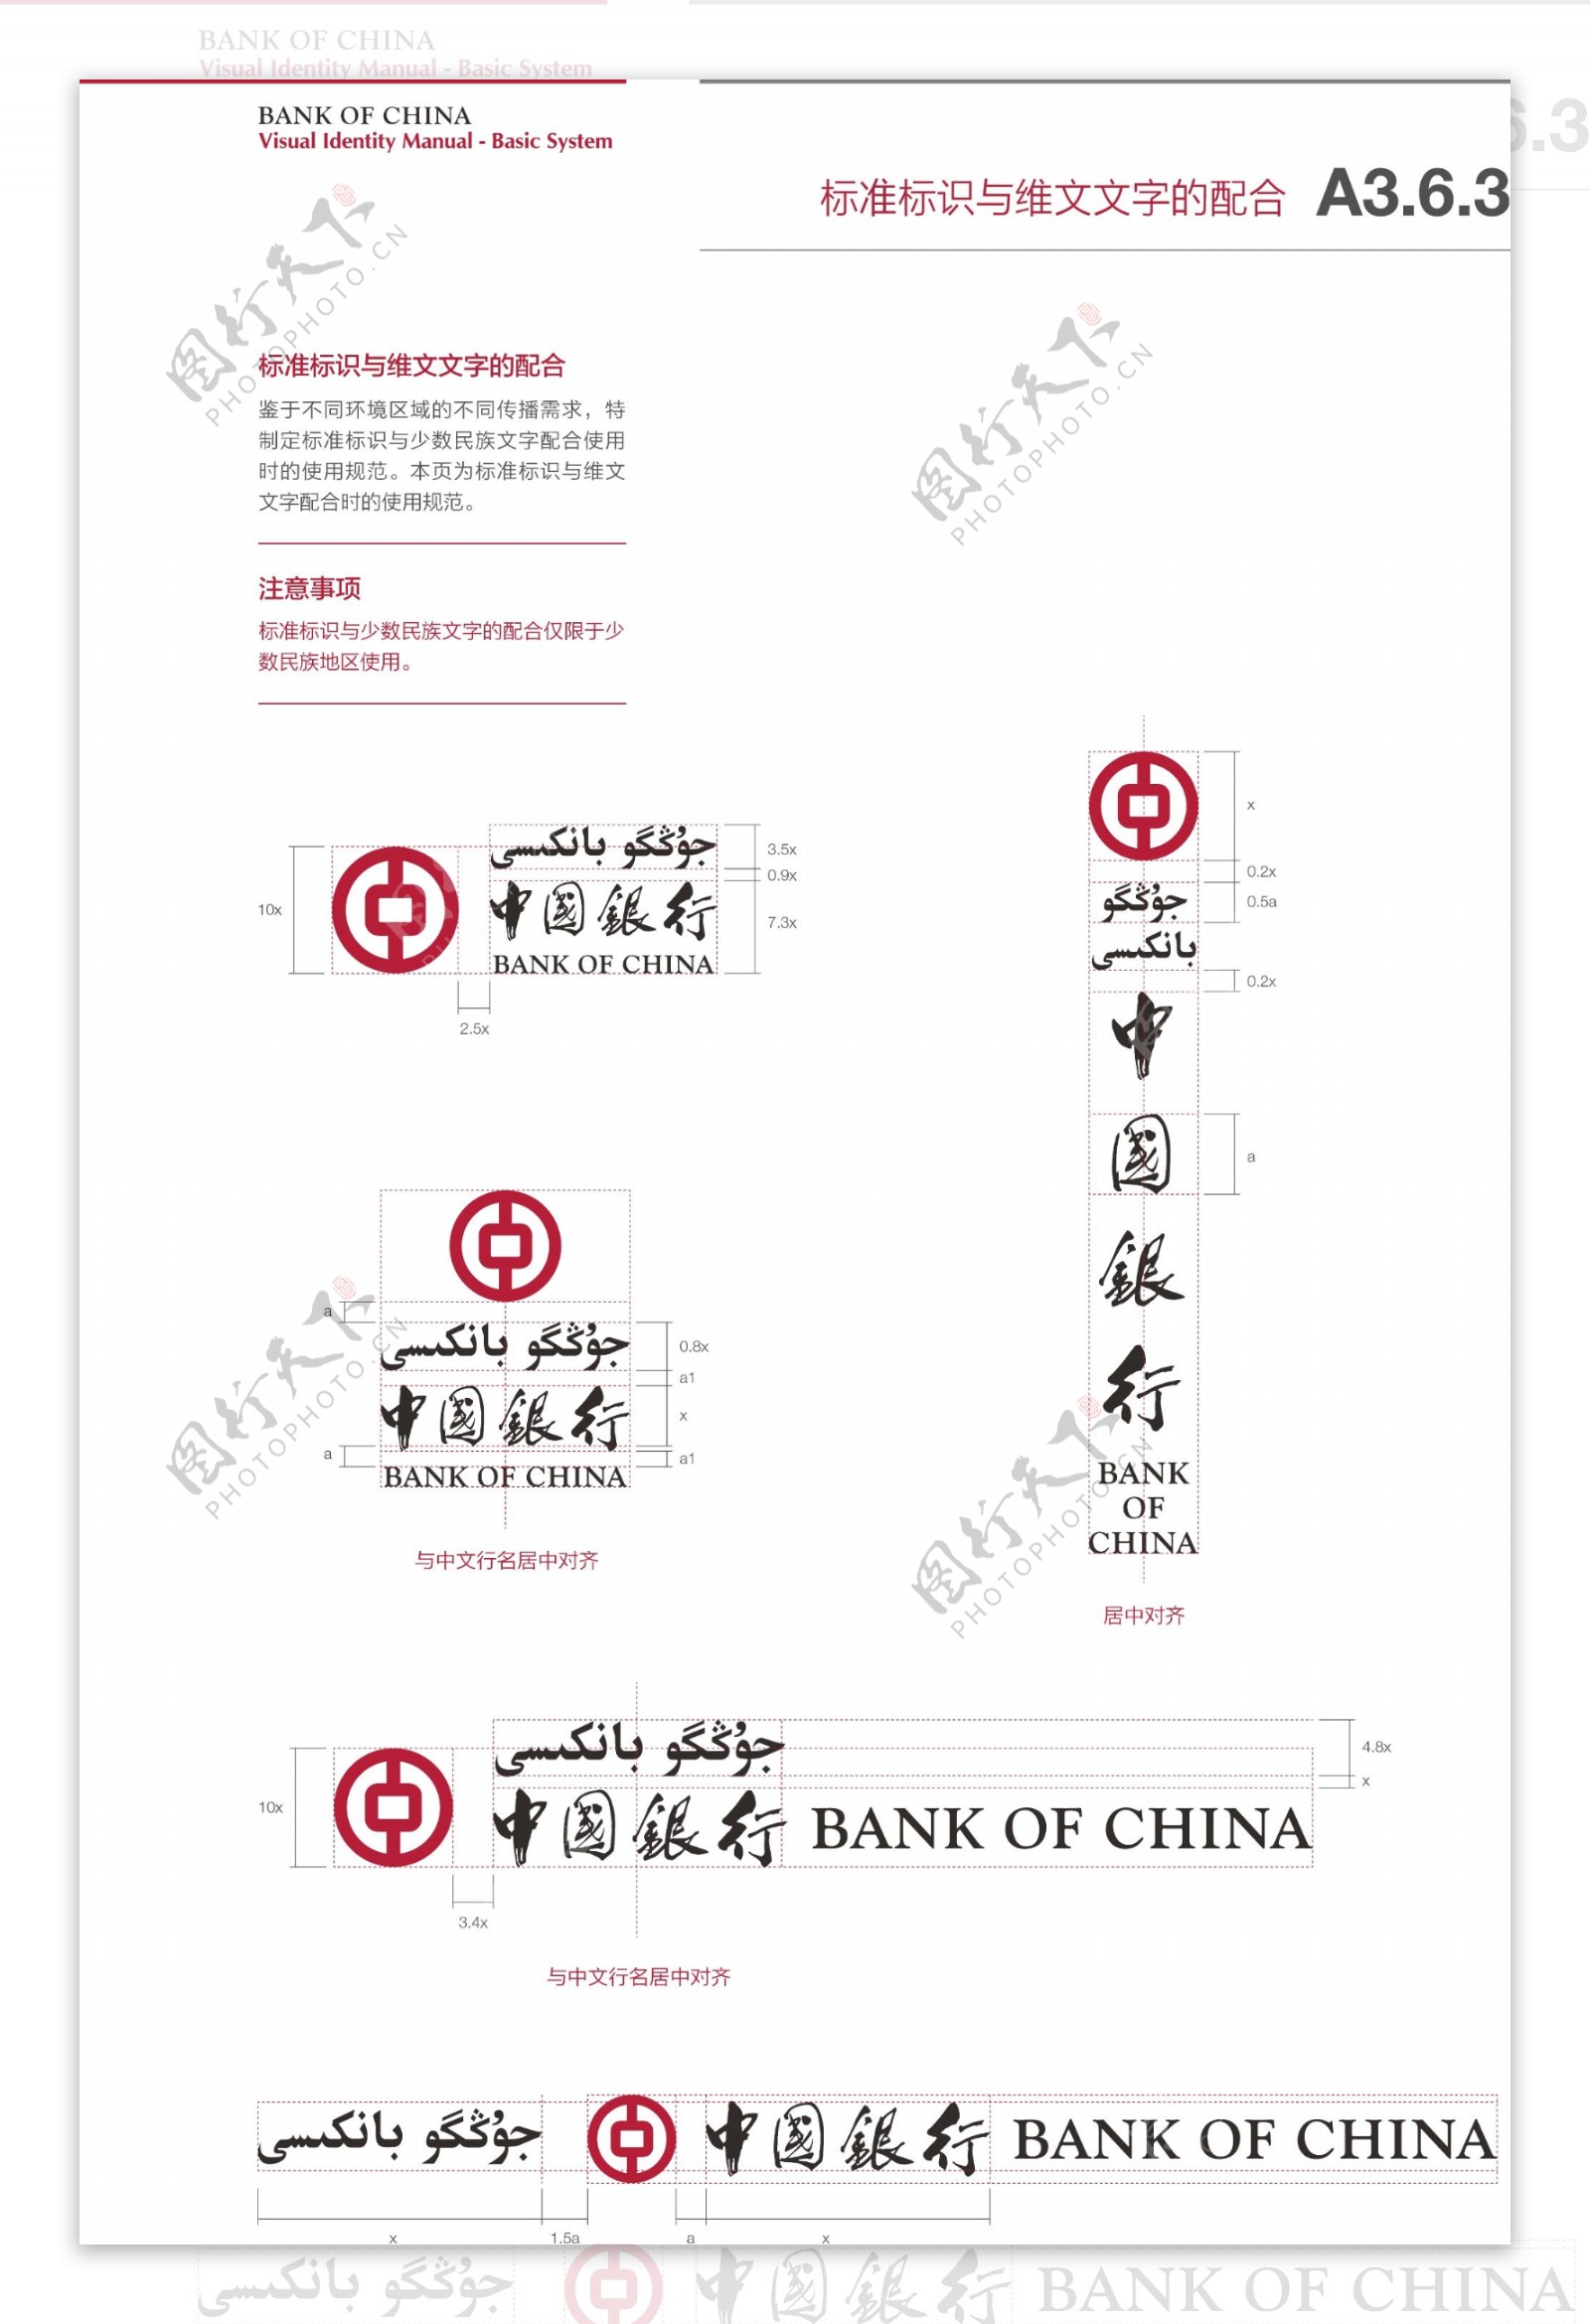 中国银行标志与维文文字的配合